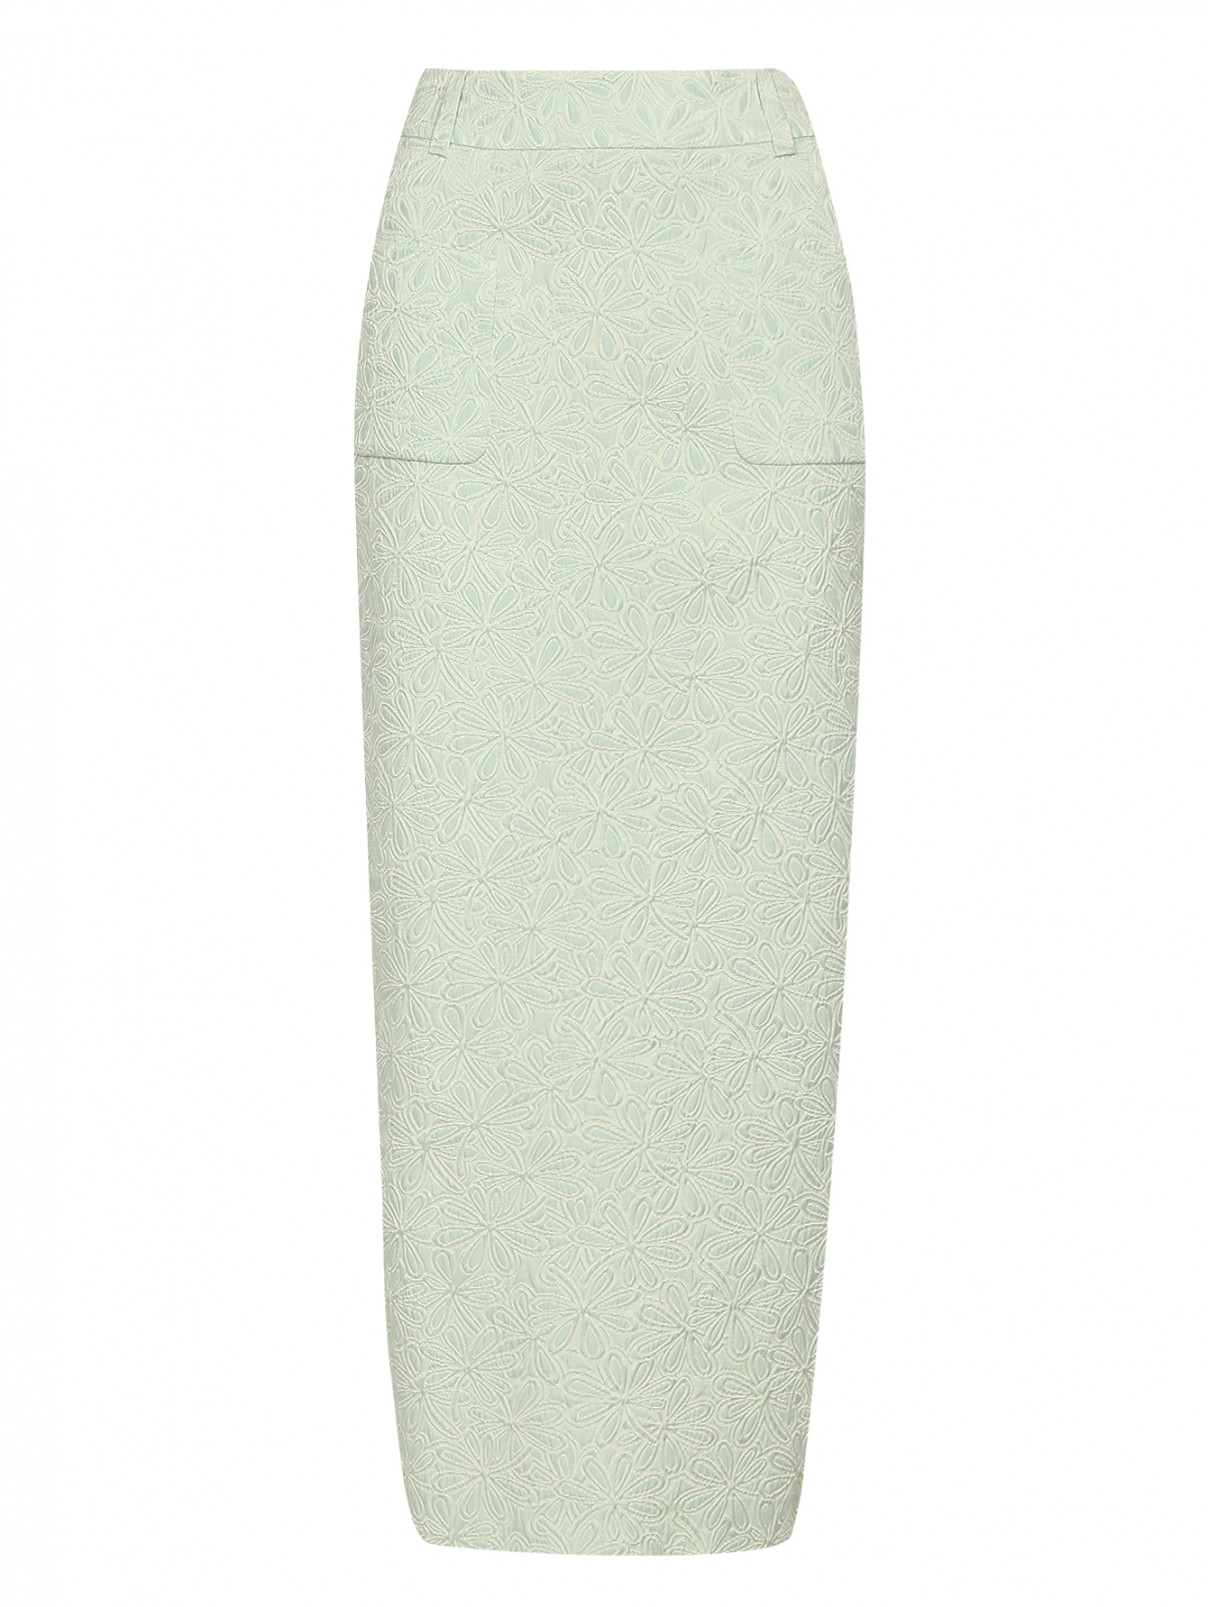 Юбка-карандаш с накладными карманами Veronique Branquinho  –  Общий вид  – Цвет:  Узор